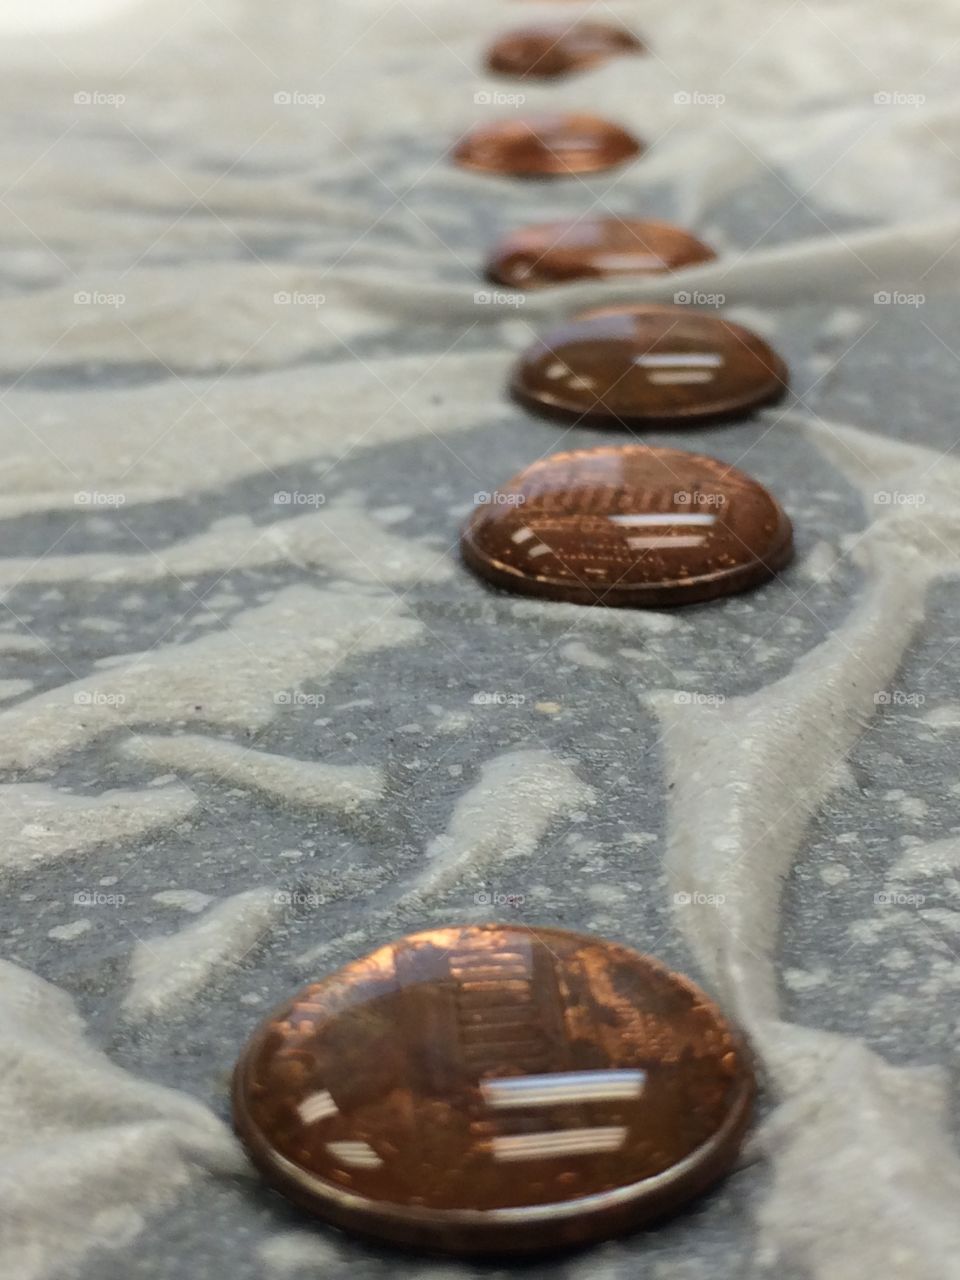 Coins 